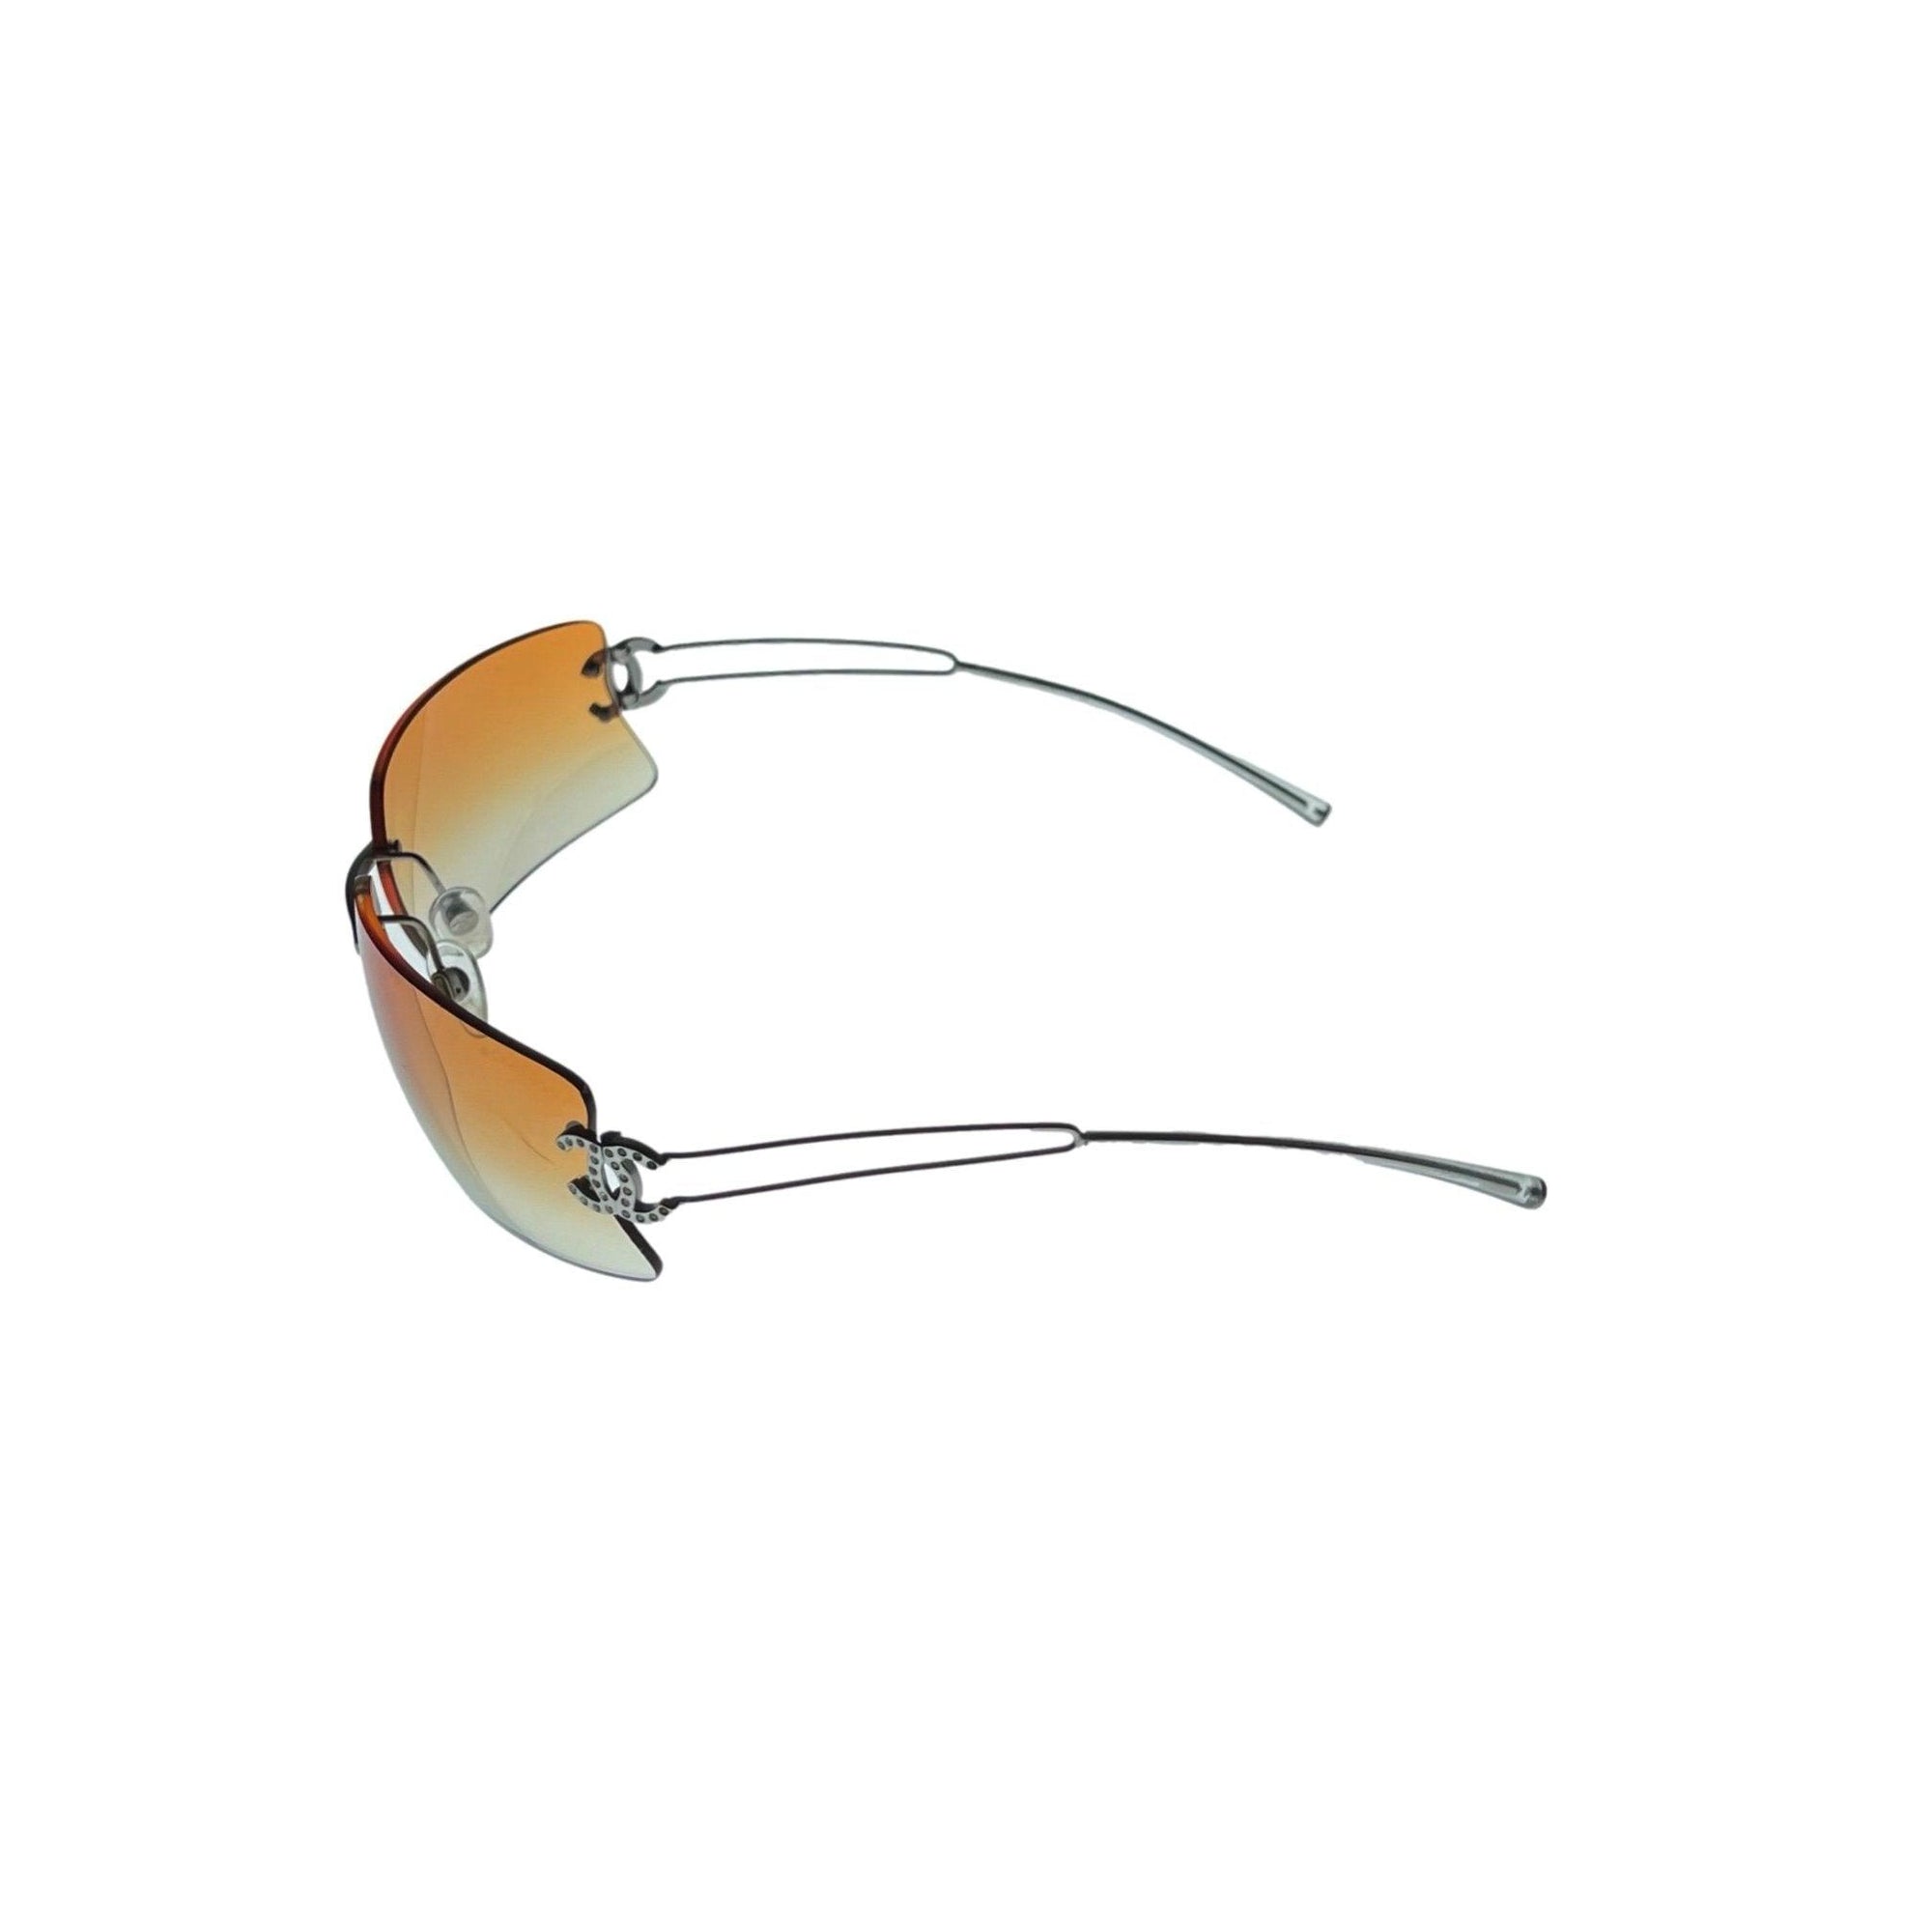 Chanel Orange Ombre Logo Rimless Sunglasses - Sunglasses